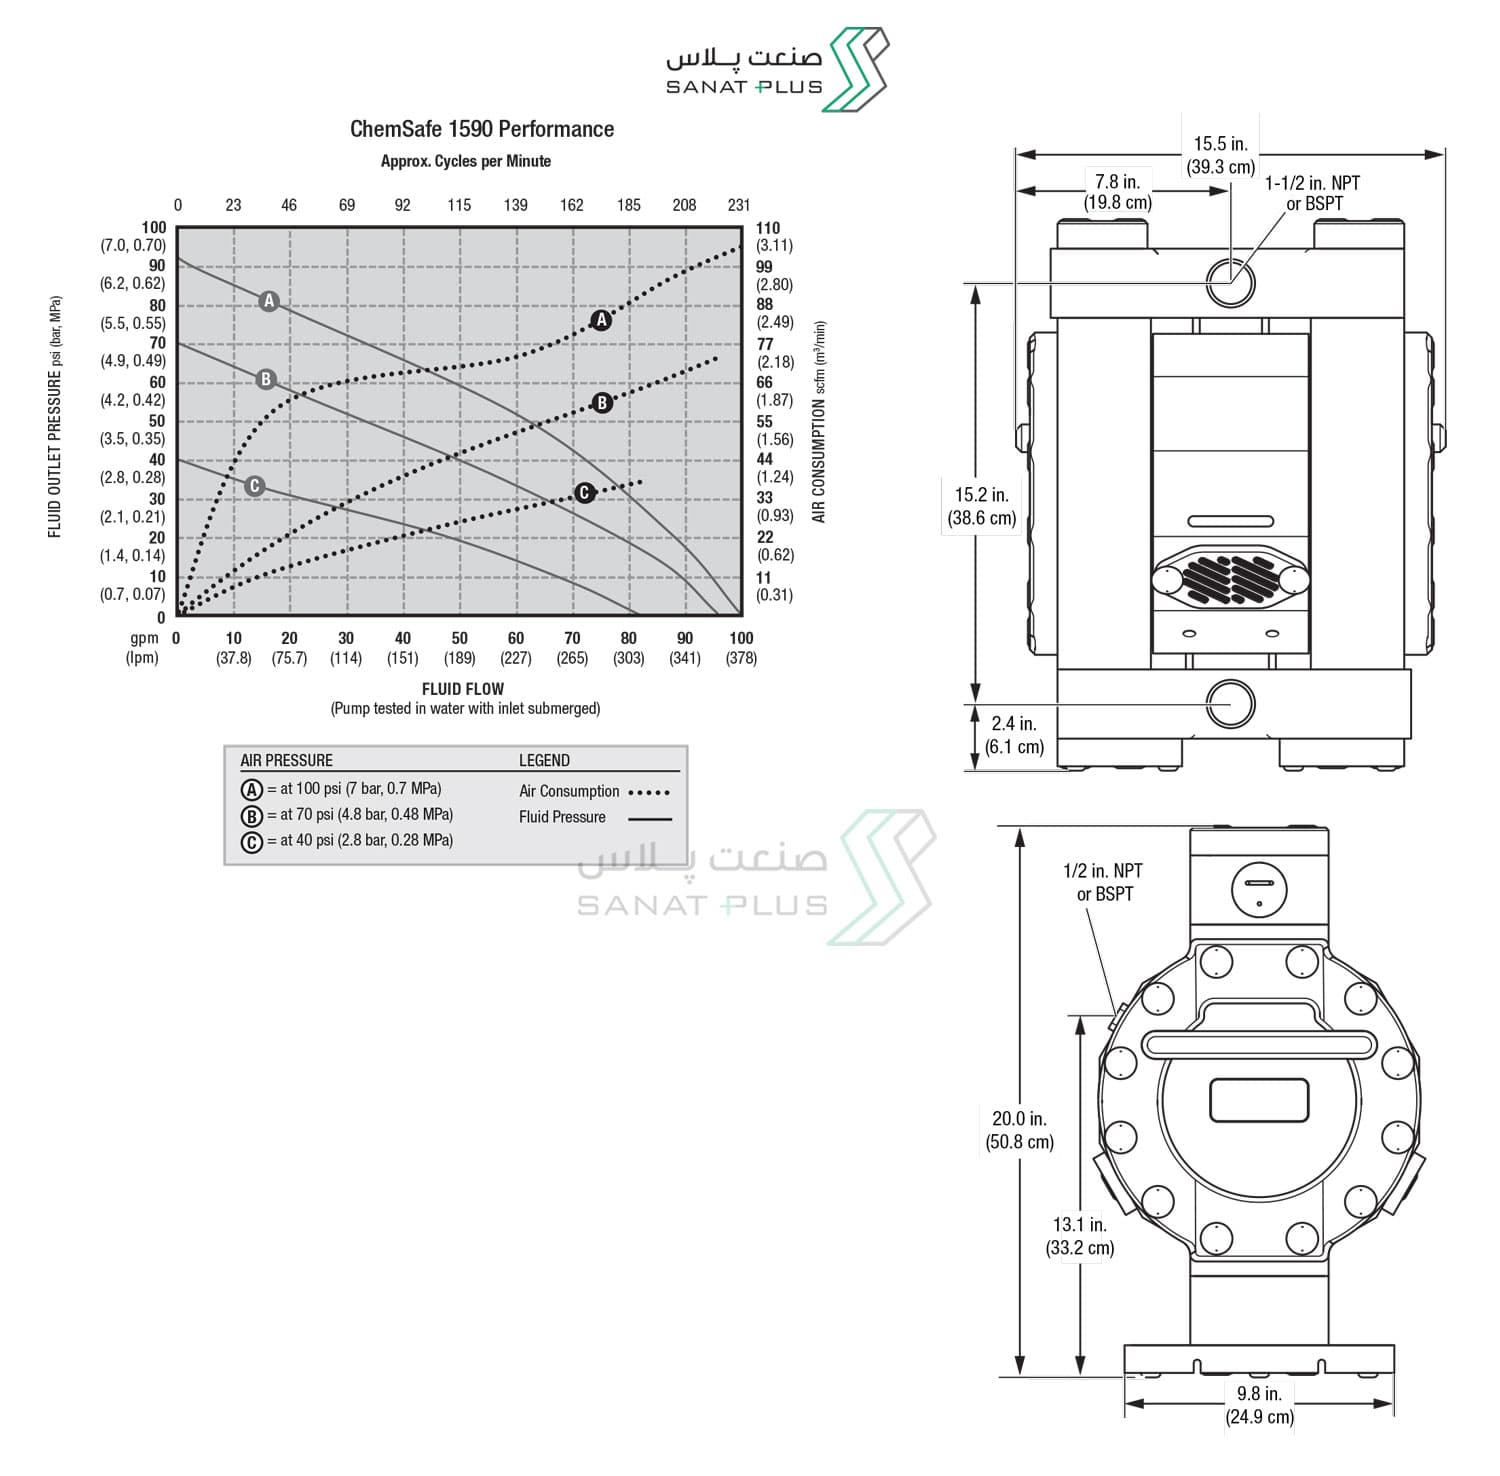 ابعاد و اندازه پمپ دیافراگمی گراکو سری ChemSafe1590
